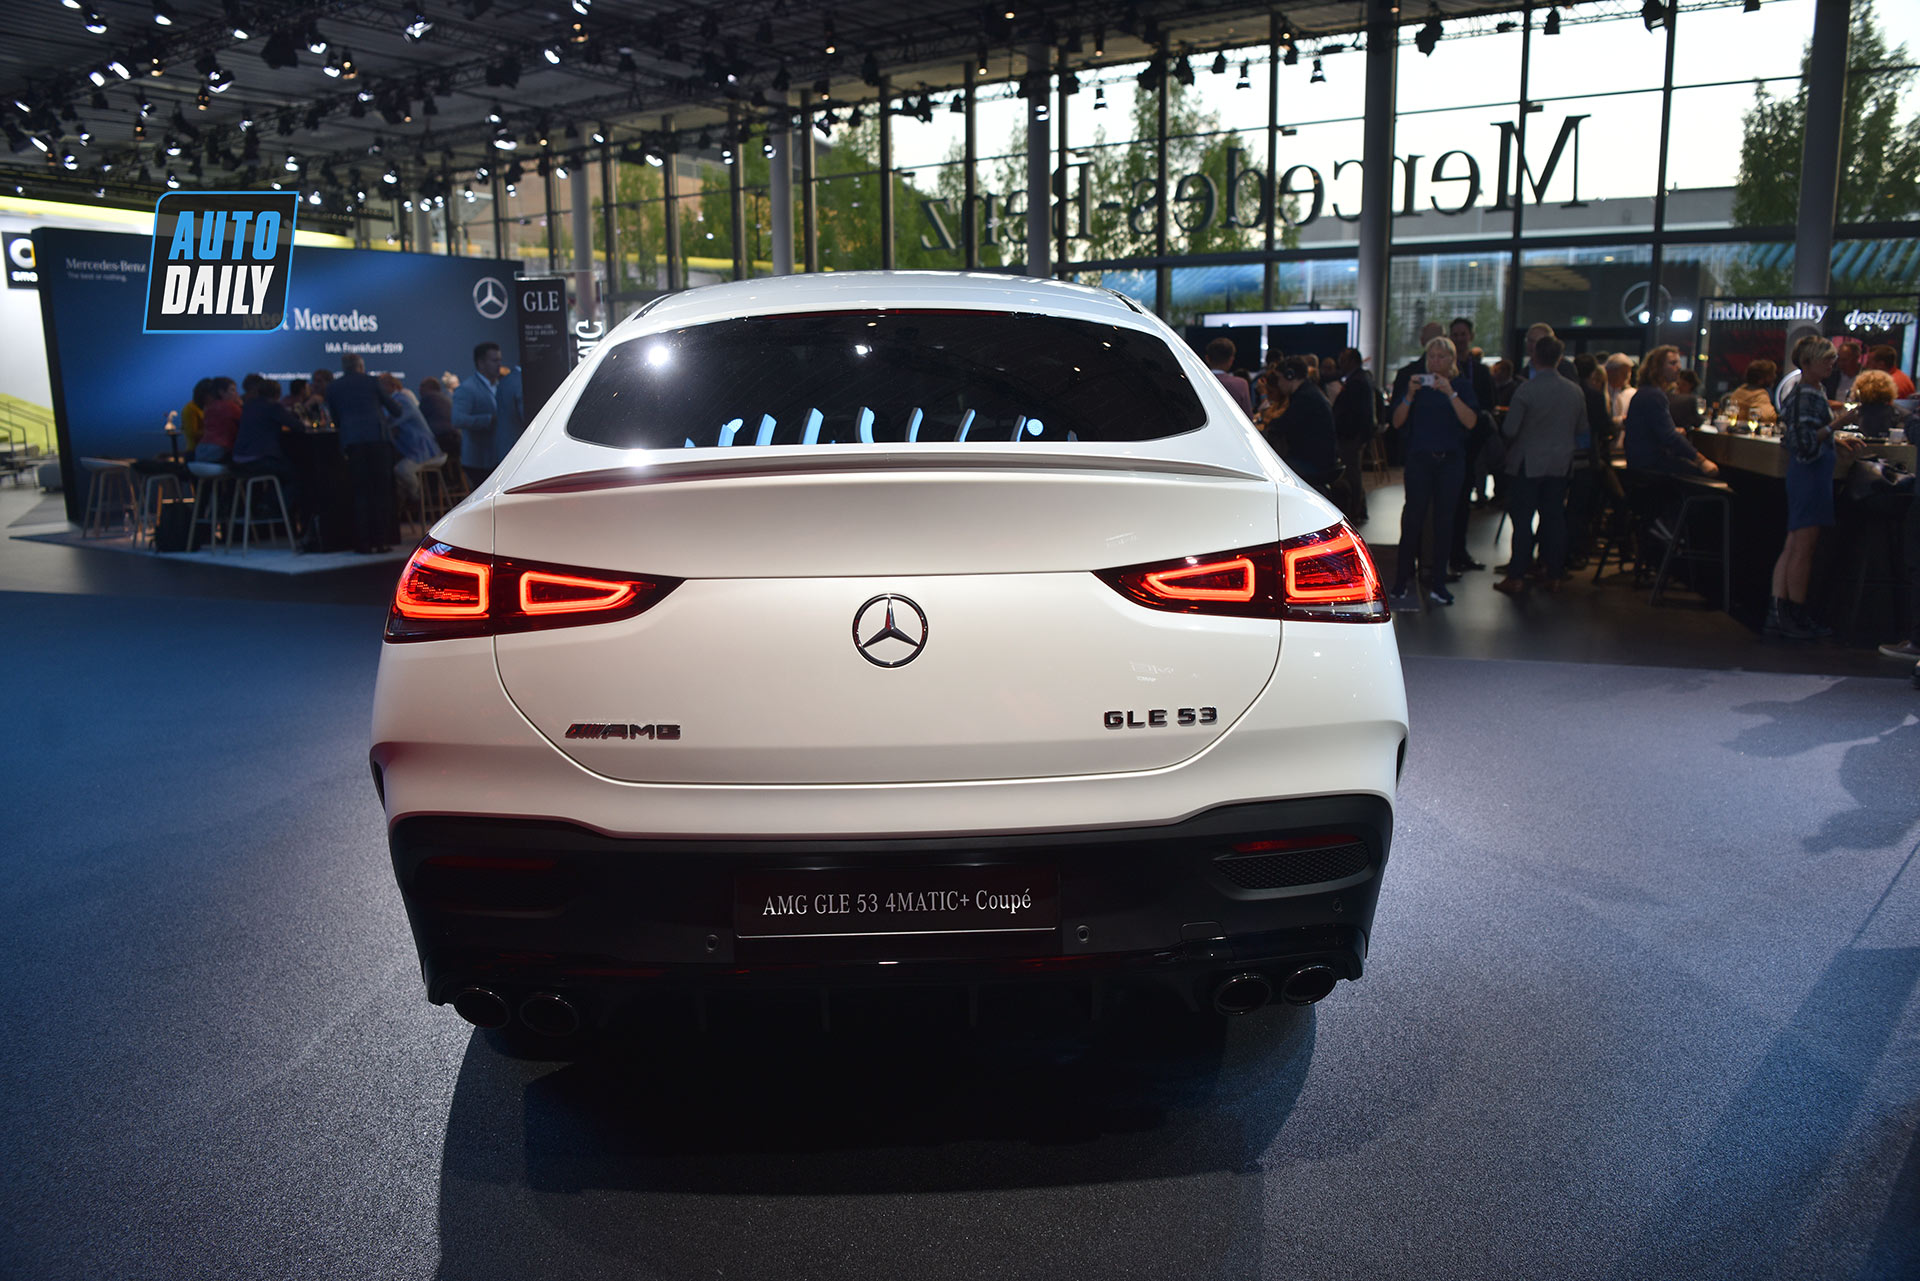 Mercedes-Benz GLE 53 Coupe 2021 sắp ra mắt tại Việt Nam, giá hơn 5,3 tỷ Khám phá chi tiết Mercedes-Benz GLE Coupe 2020 tại Frankfurt Auto Show 2019 gle-53-4matic-autodaily-05.jpg